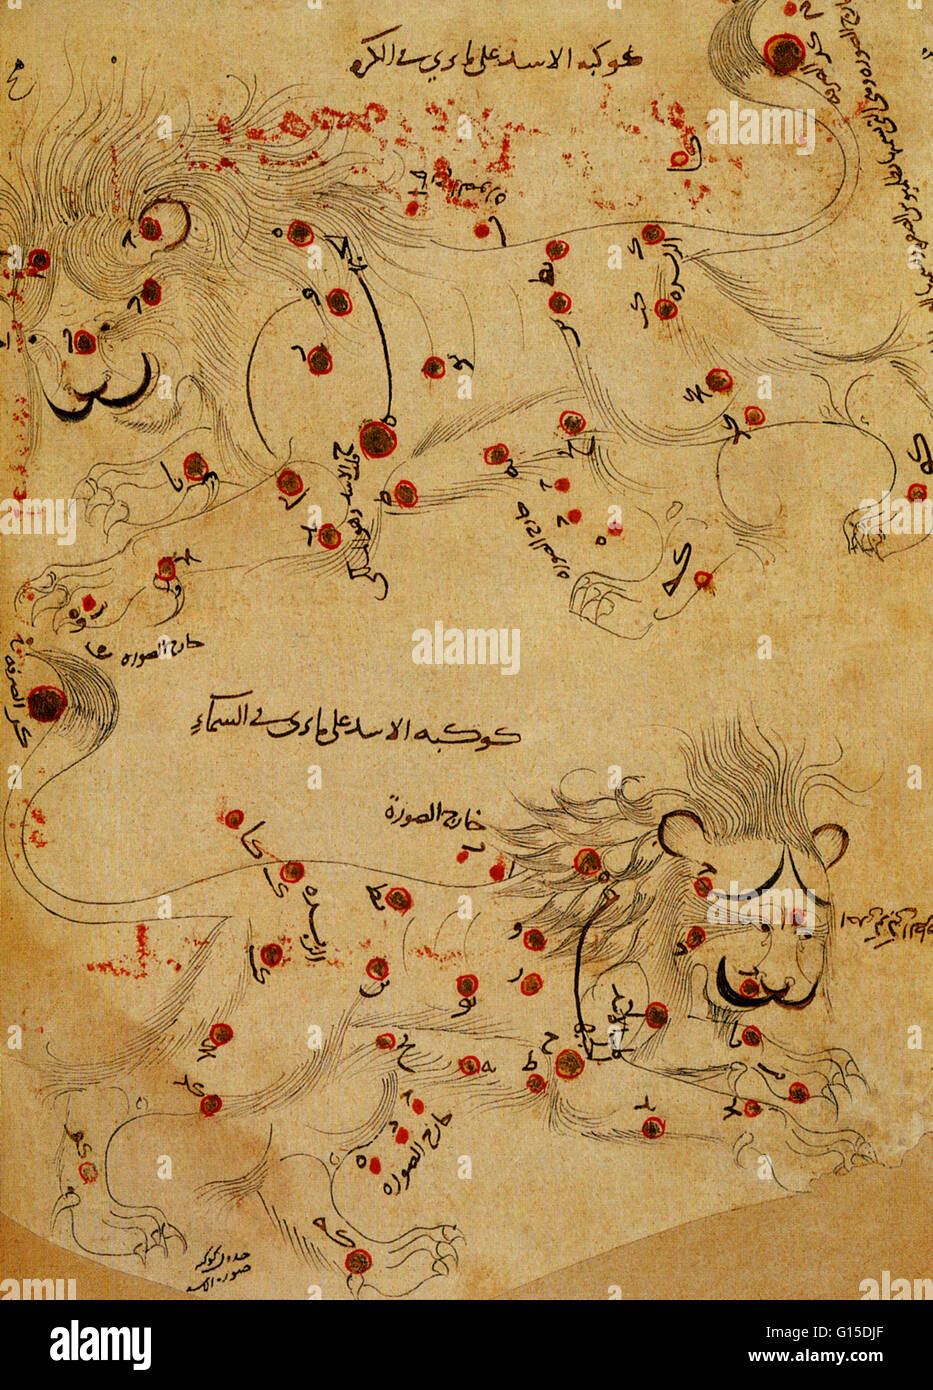 Leo Sternbild, wie es scheint im "Buch der Fixsterne," von der persische Astronom Abd al-Rahman al-Sufi in 964 geschrieben. Das Sternbild ist in zwei Ansichten, wie von der Erde aus gesehen, und auf der Außenseite ein Himmelsglobus gesehen dargestellt. Leo ist Stockfoto